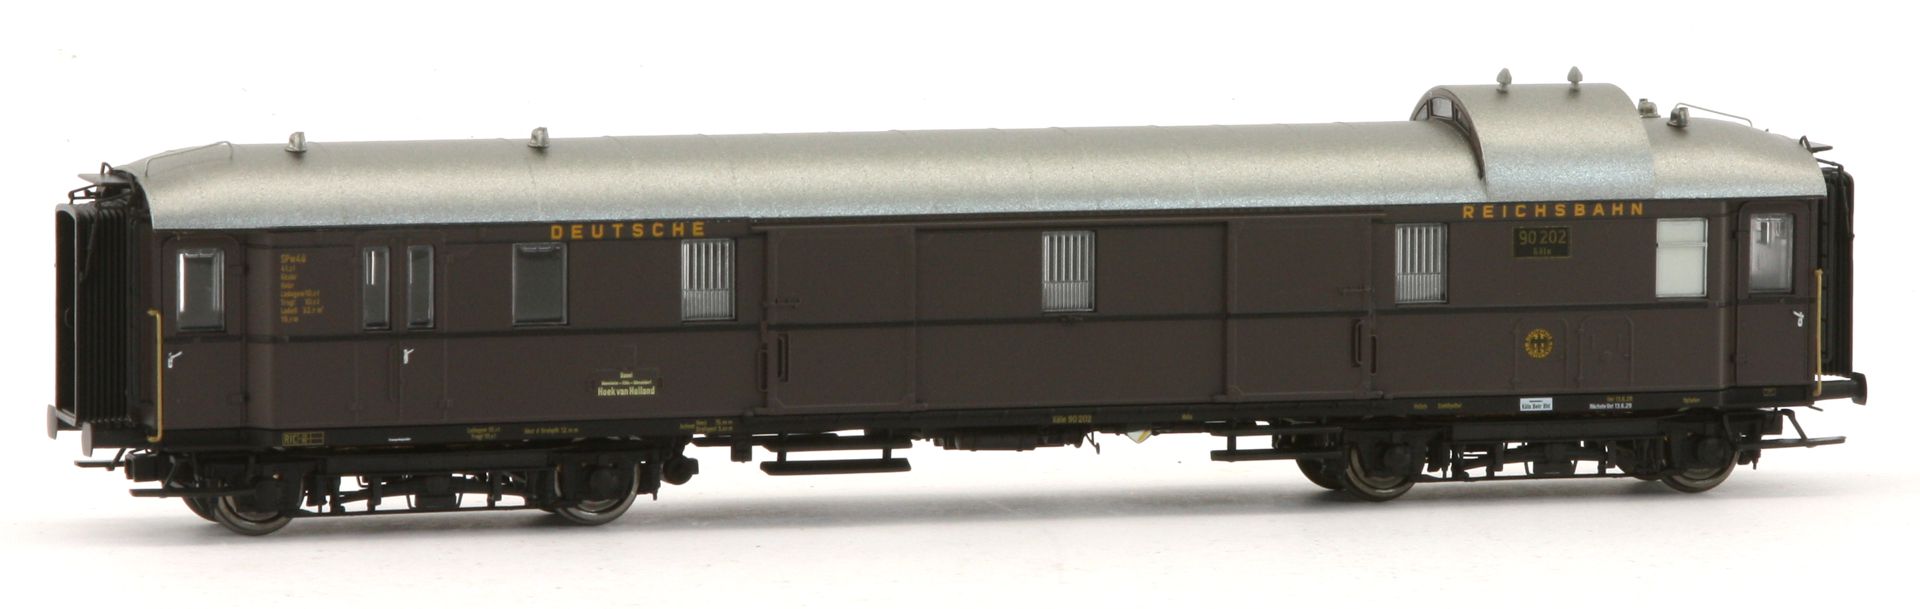 Brawa 50682 - 6er Set 'Rheingold' mit BR 01 und Personenzug, DRG, Ep.II, DC-Sound-Extra